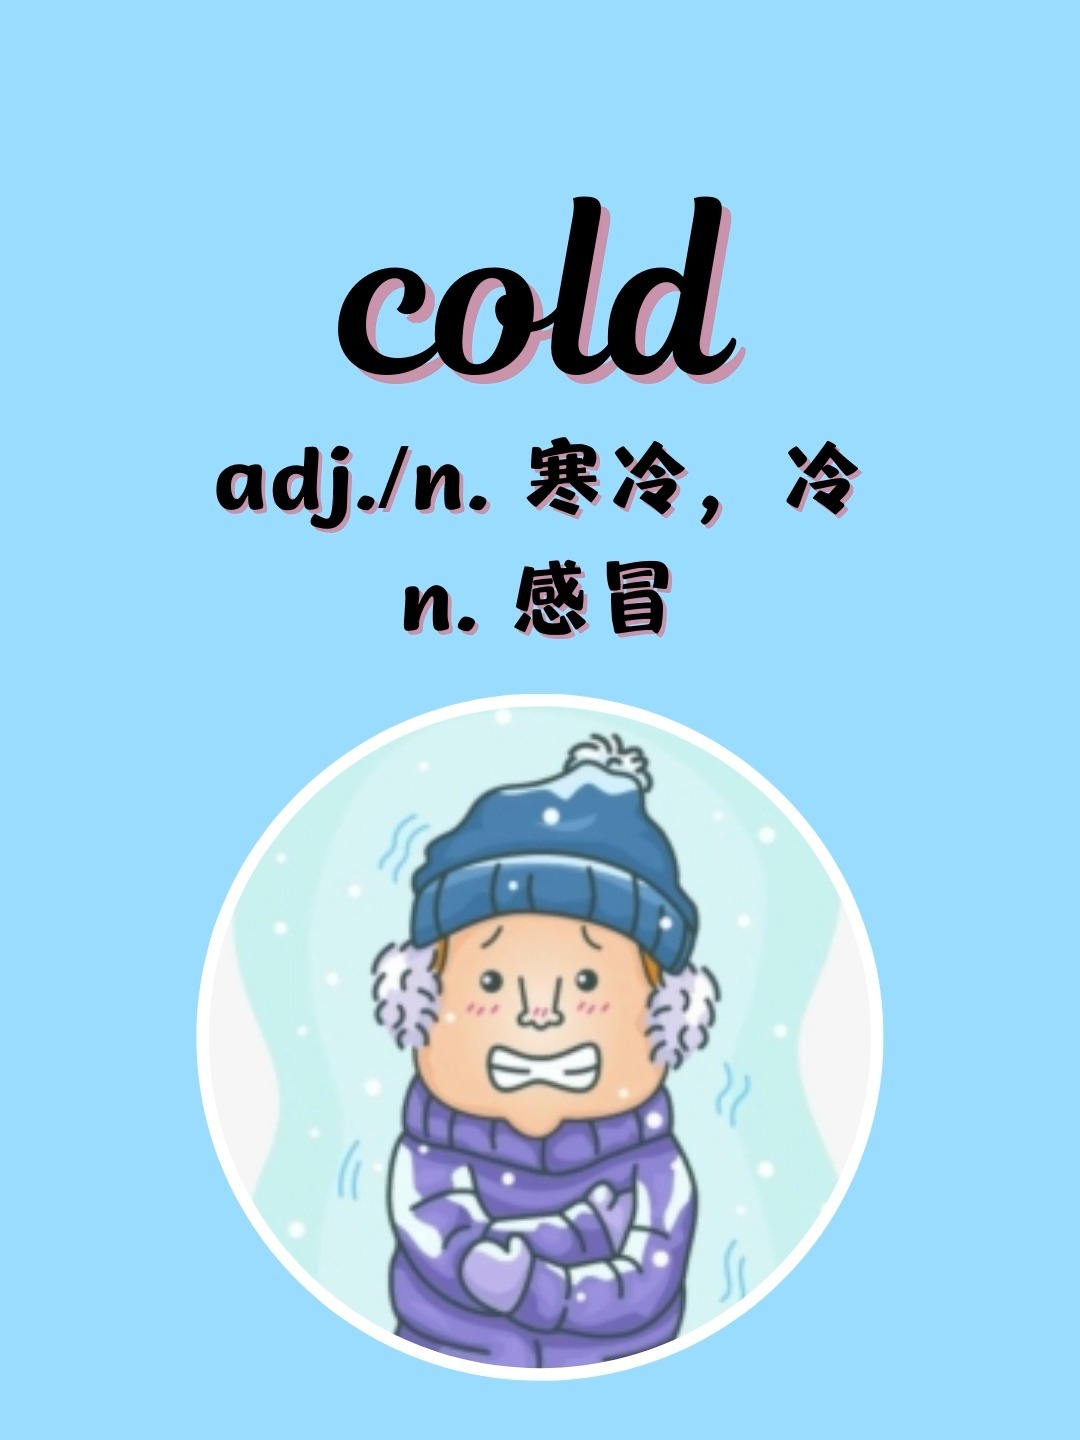 cold单词卡片图片